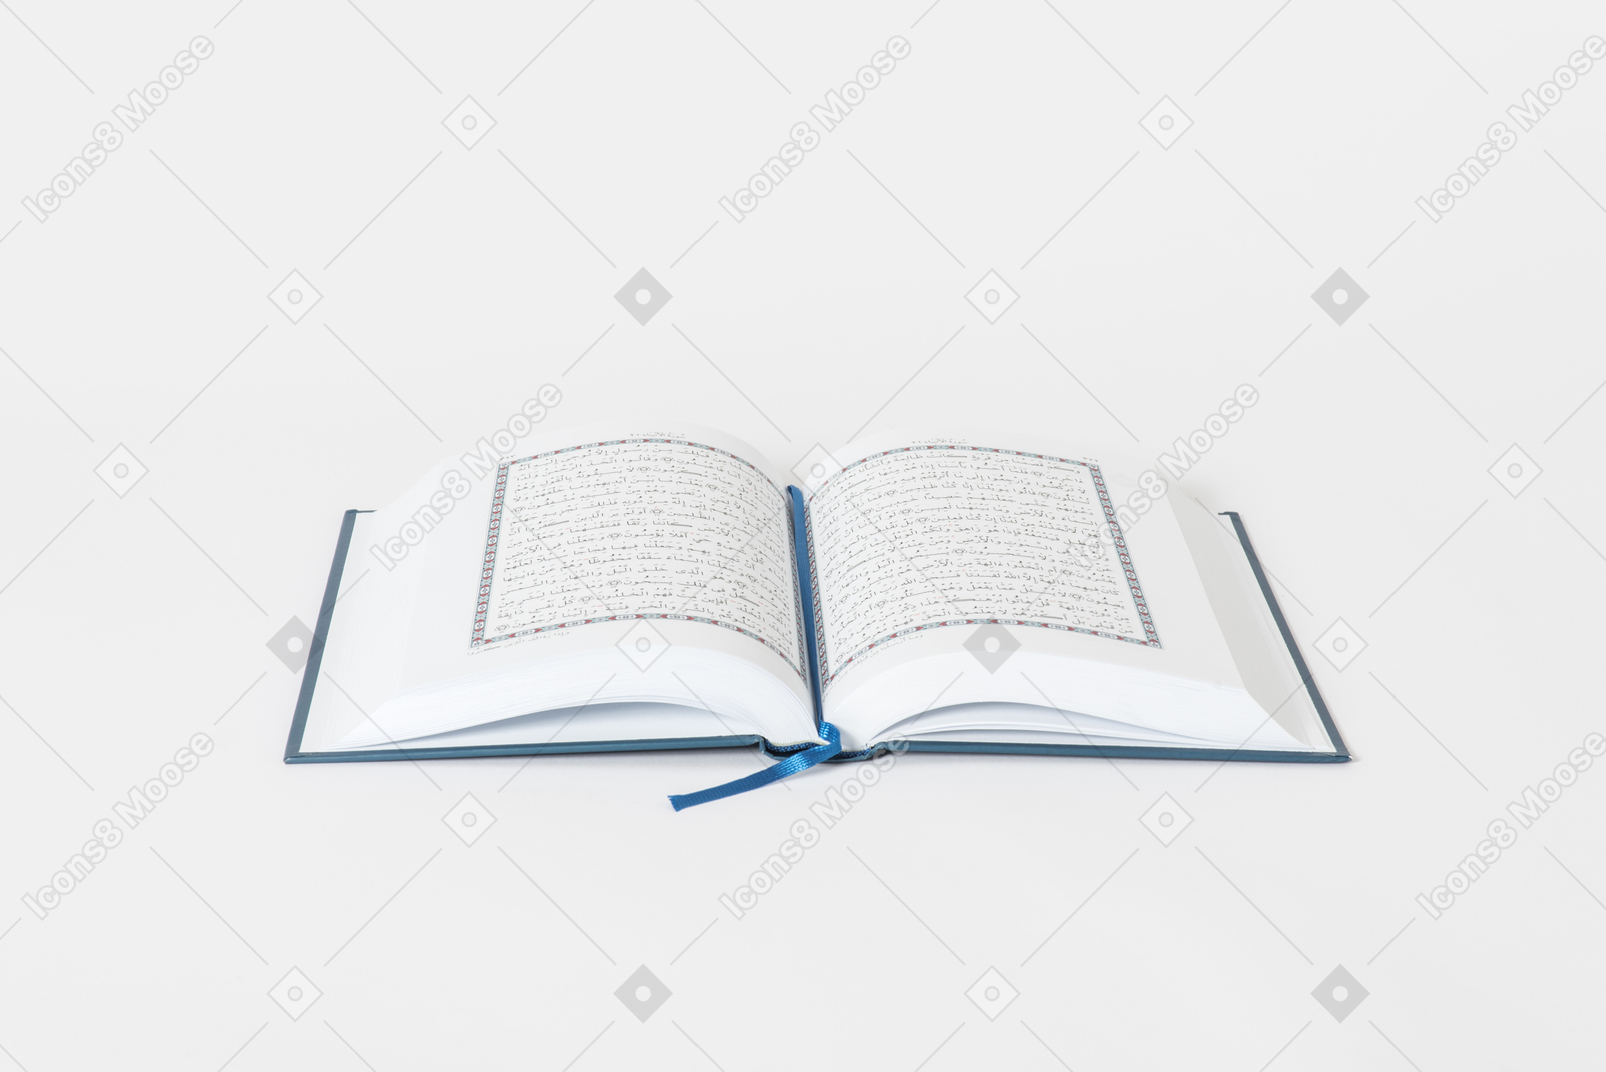 Open koran book on white background